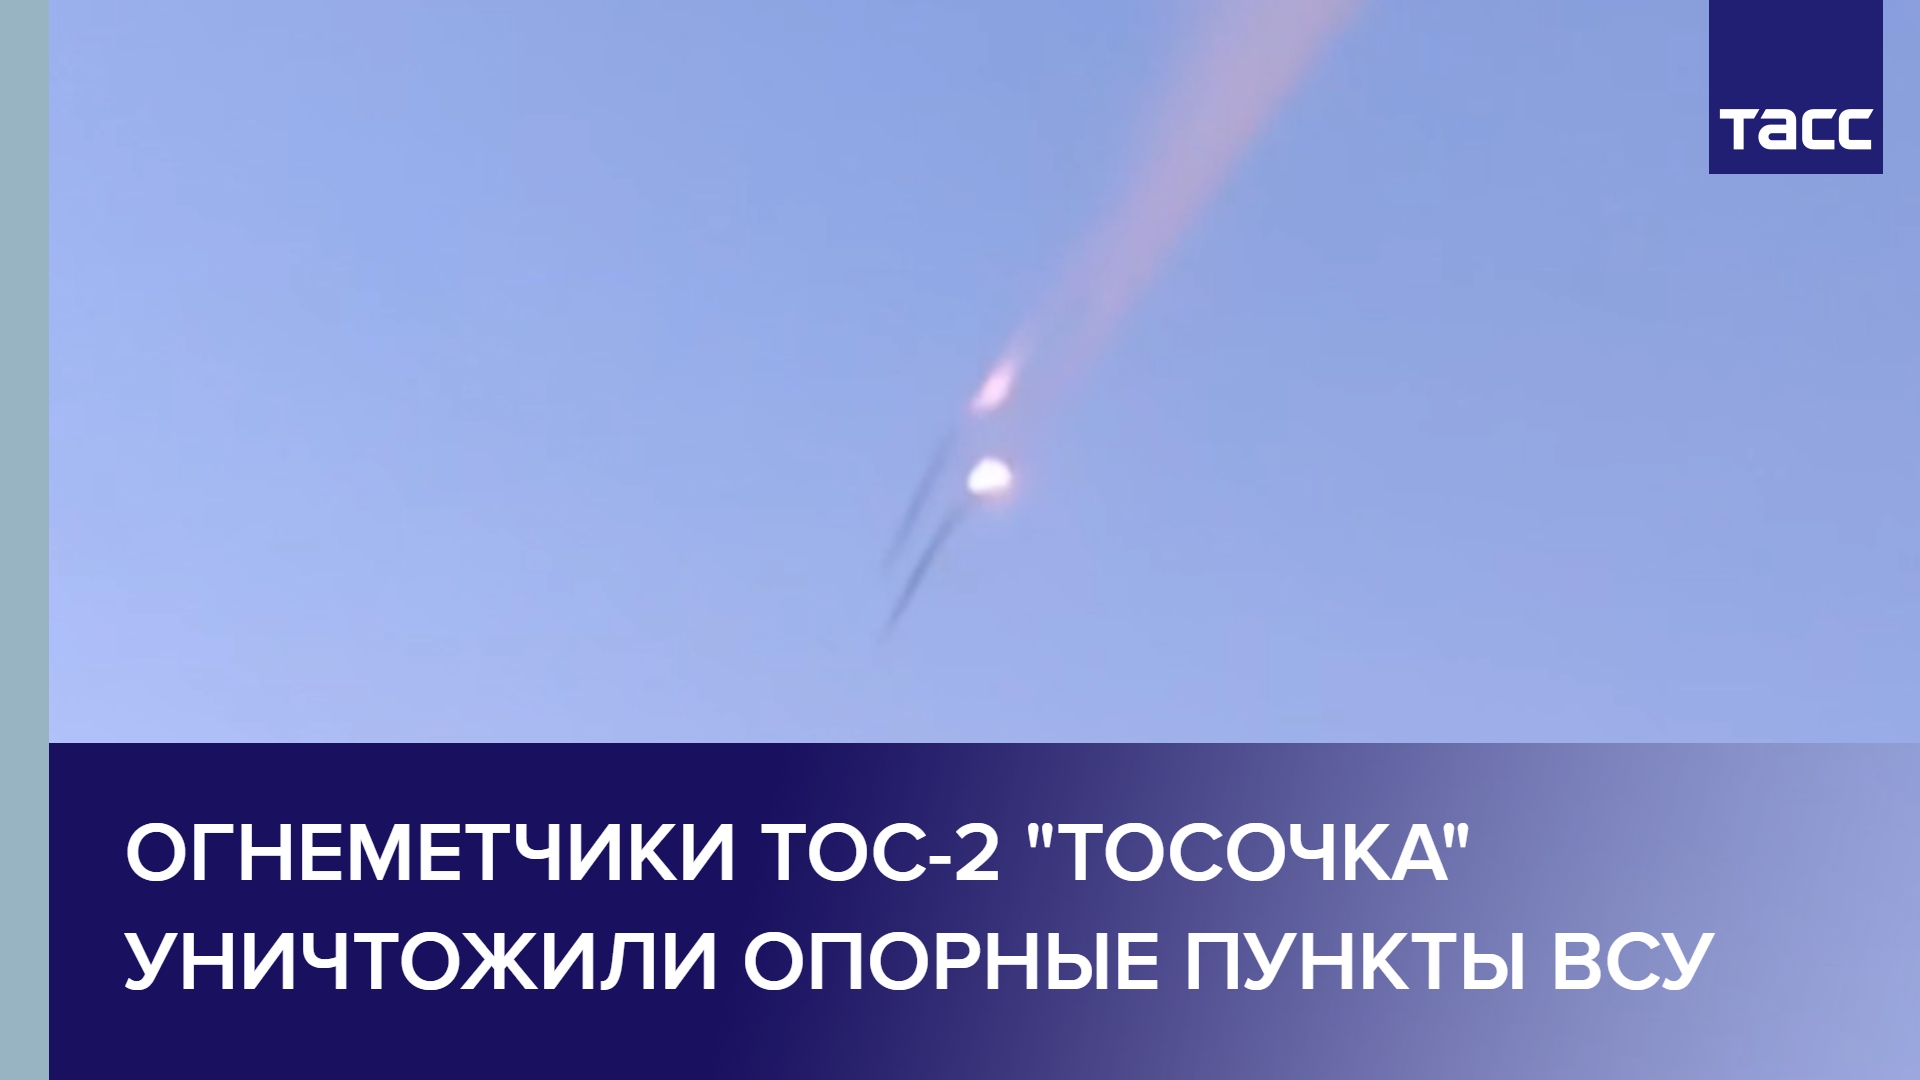 Огнеметчики ТОС-2 "Тосочка" уничтожили опорные пункты ВСУ